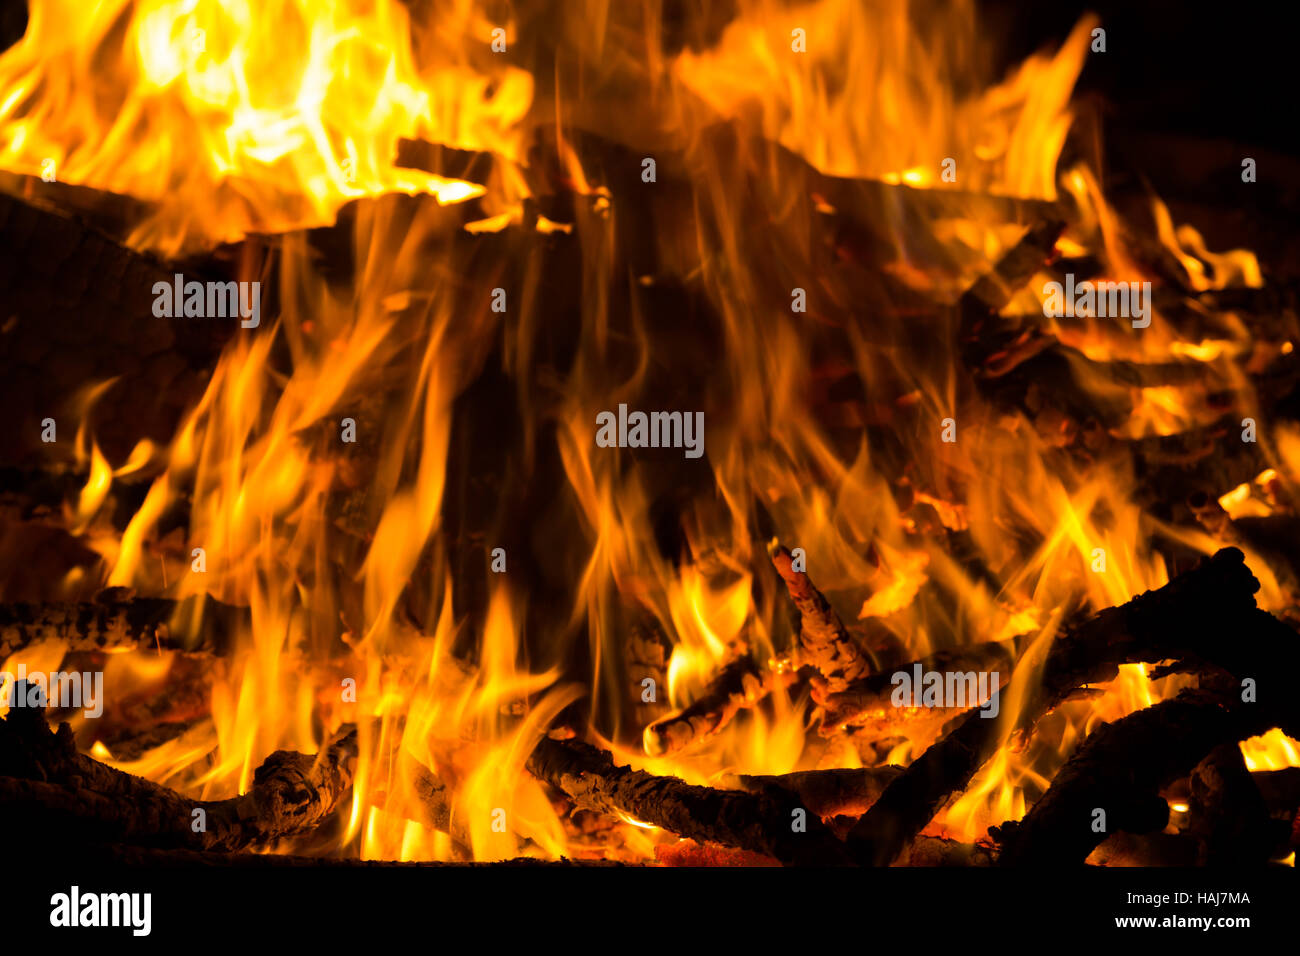 Un grand feu de camp avec flammes c'est chaud Banque D'Images